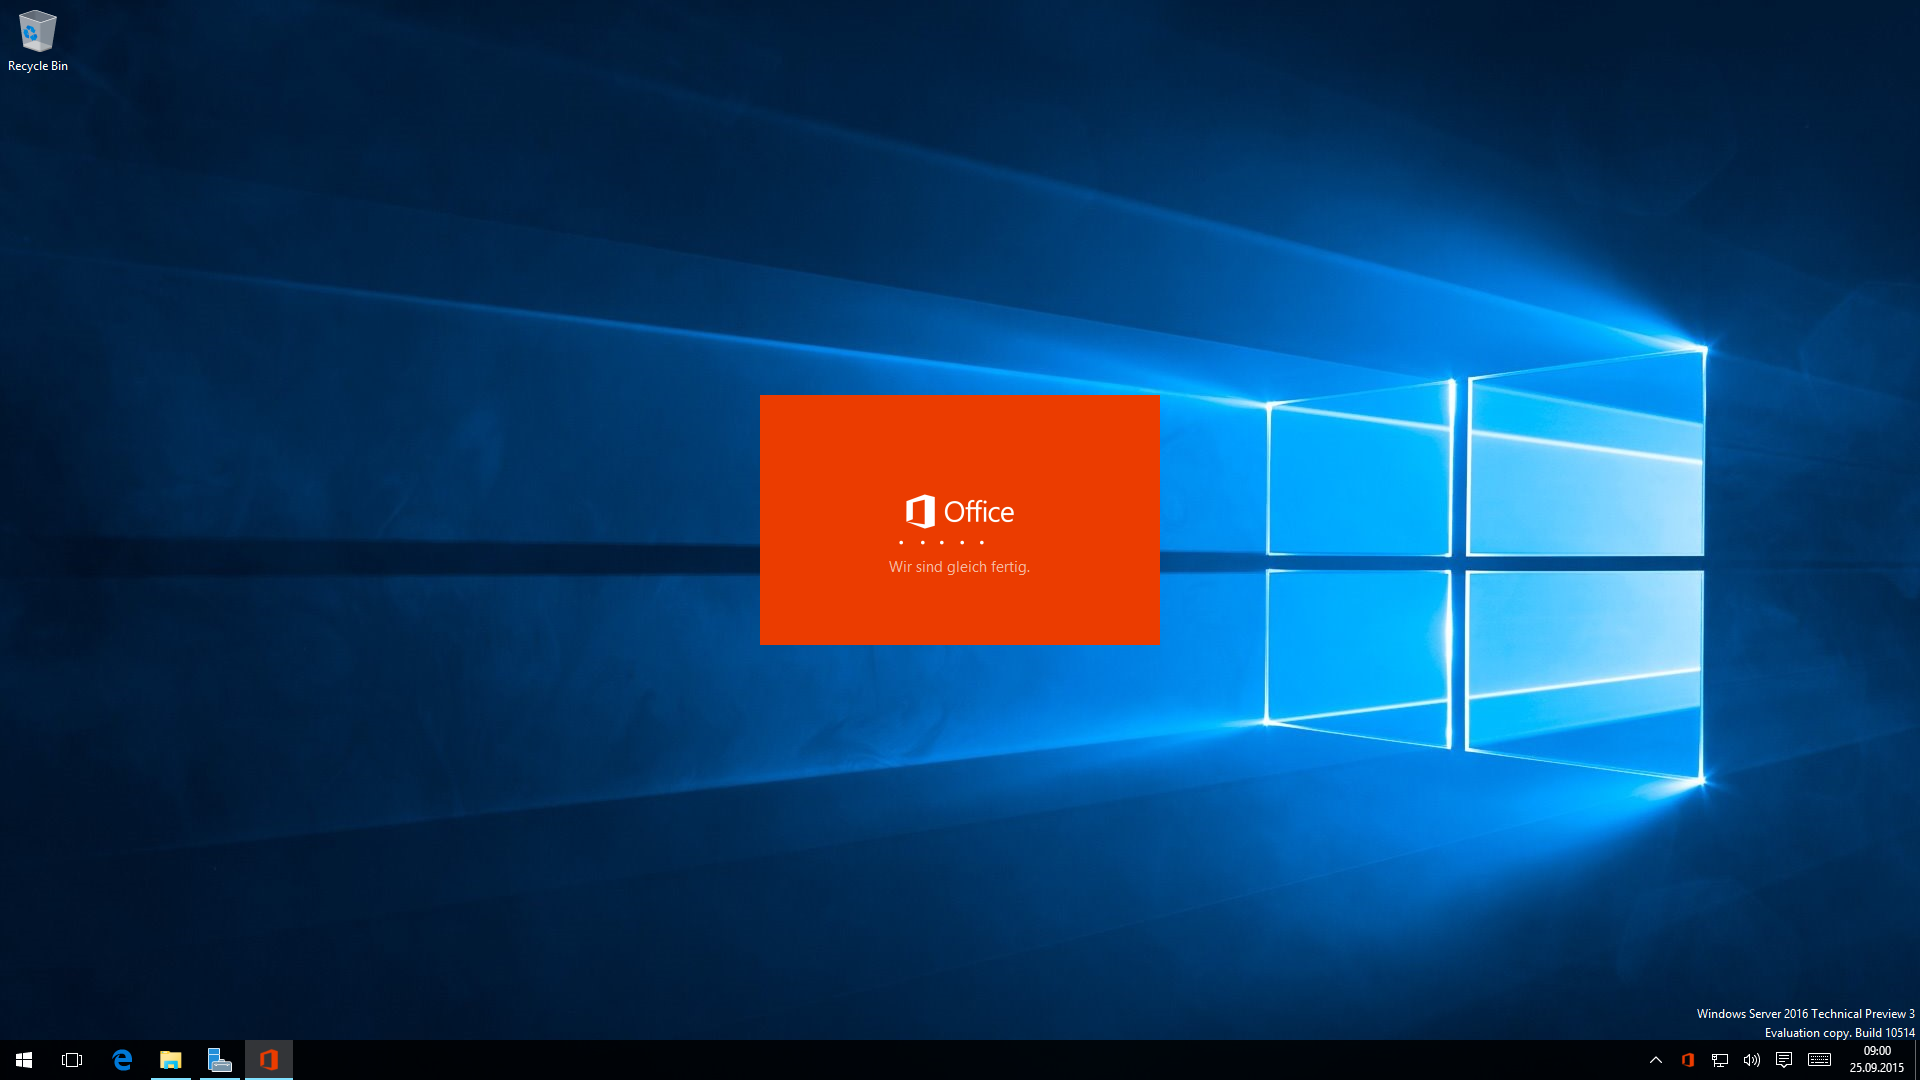 Das Startfenster zur Installation von Office 2016 unter Windows Server 2016 (Technical Preview 3)